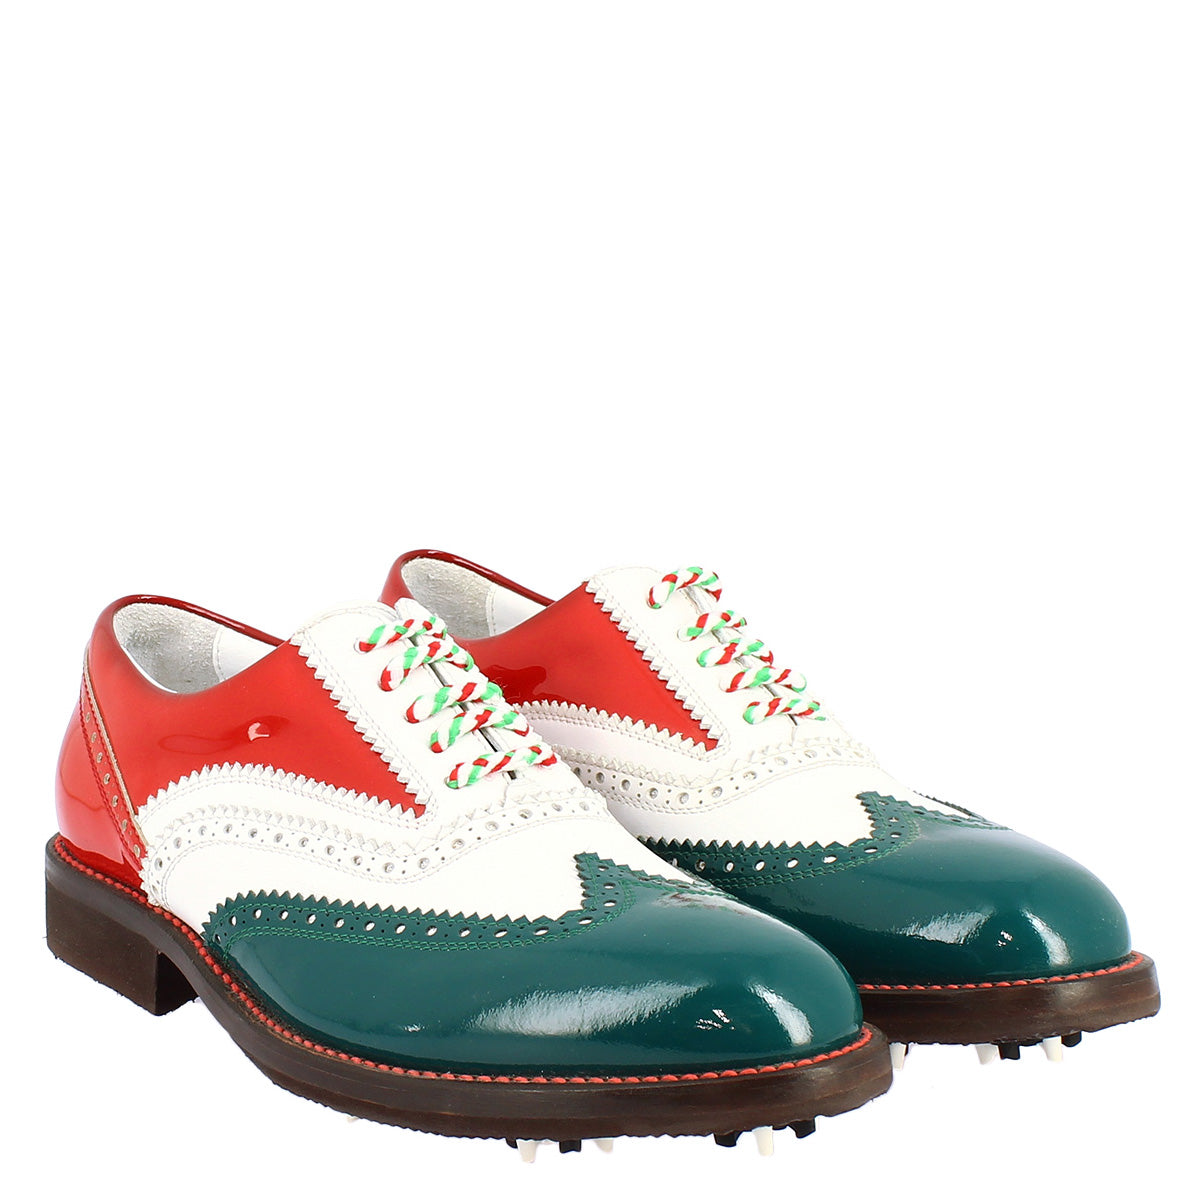 Handgefertigte Golfschuhe für Damen in den Farben der italienischen Flagge